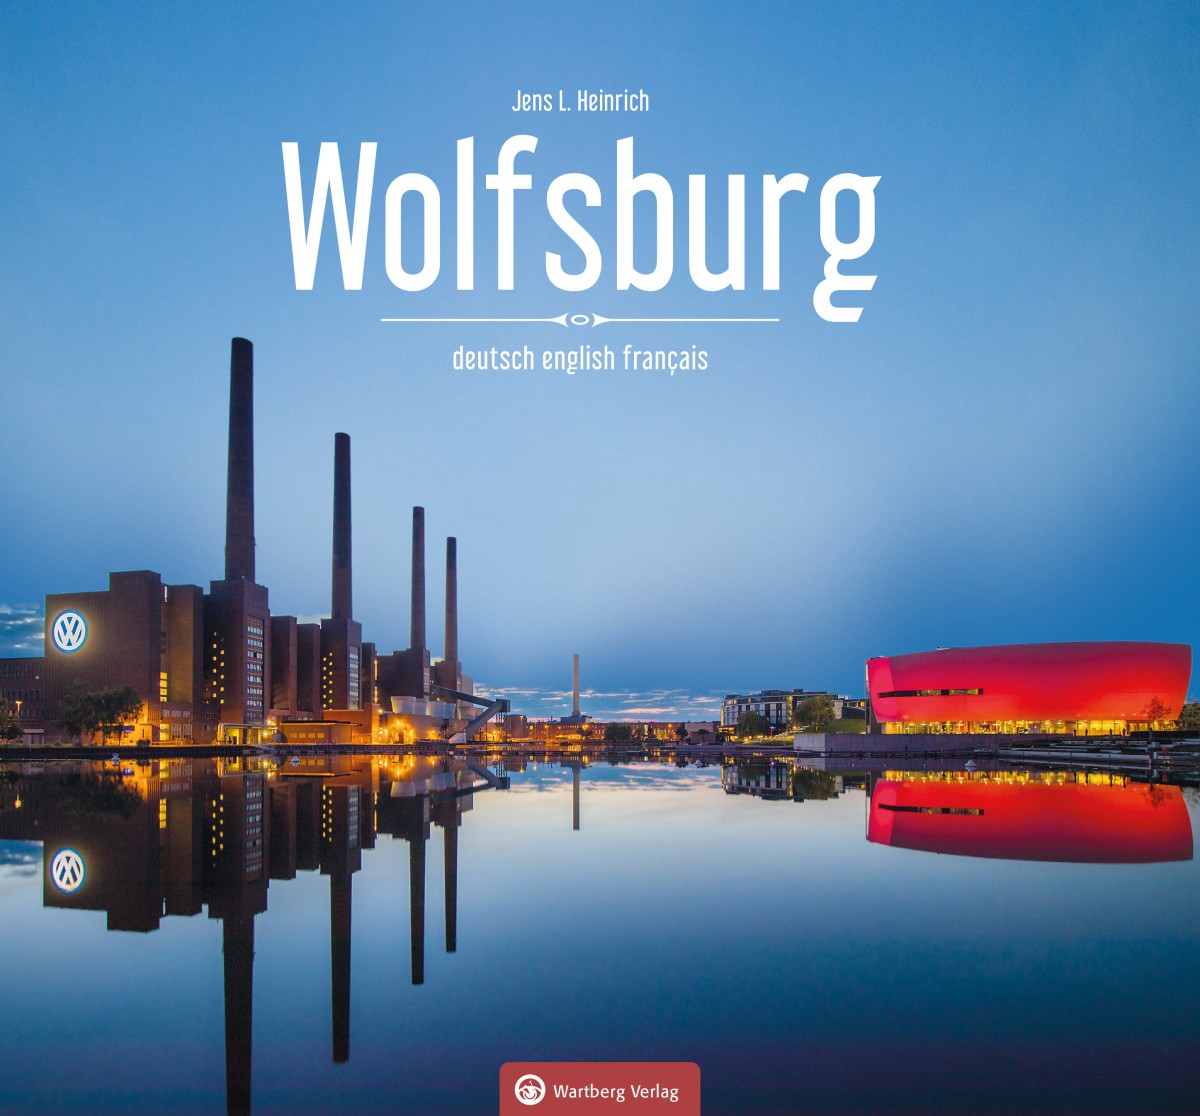 Das Foto zeigt das Cover des Bildbands "Wolfsburg" von Jens L. Heinrich